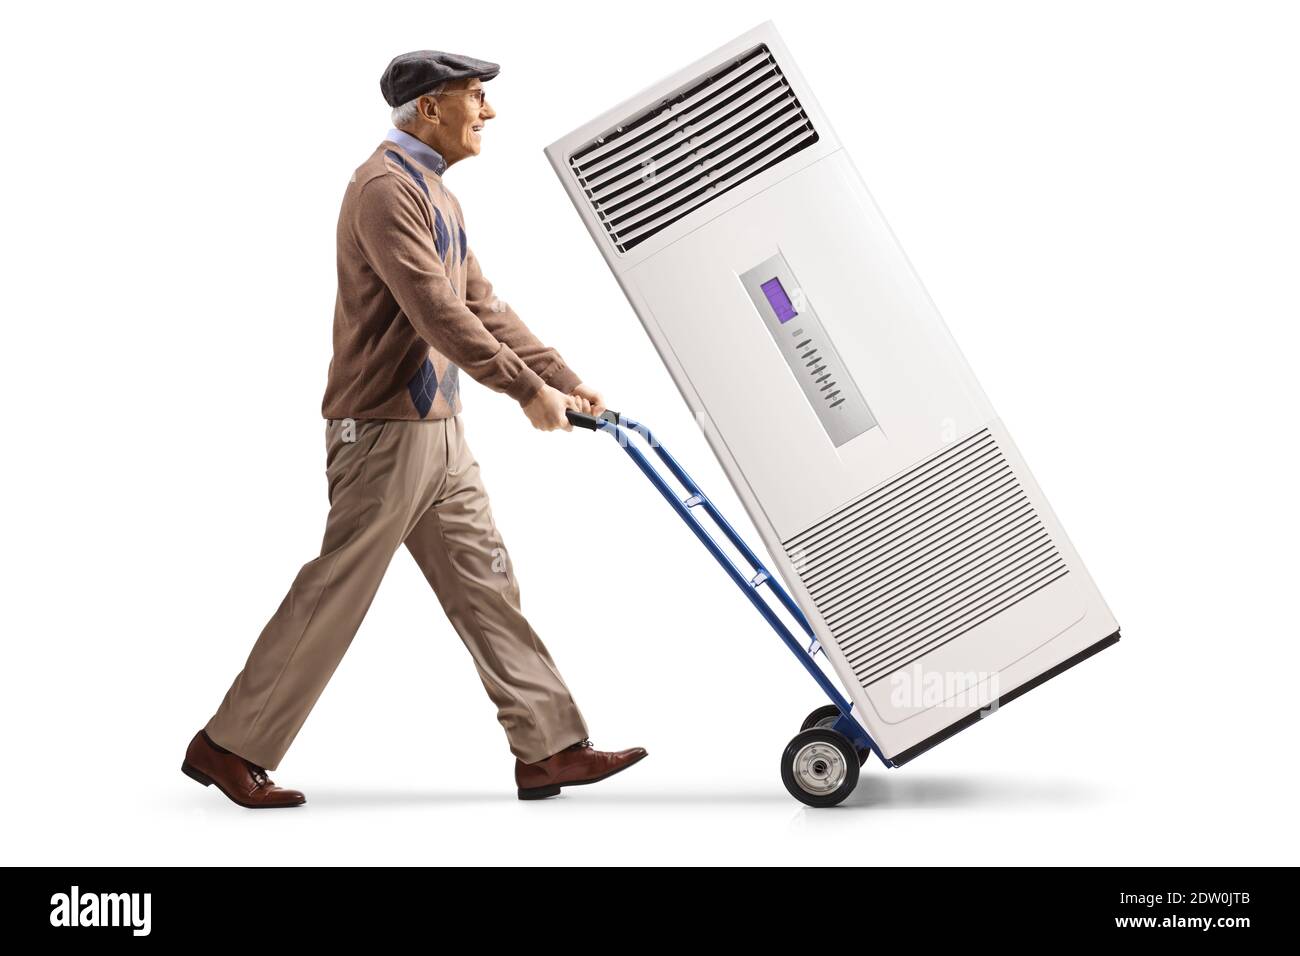 Uomo anziano che cammina e spinge un'unità di aria condizionata un carrello a mano isolato su sfondo bianco Foto Stock